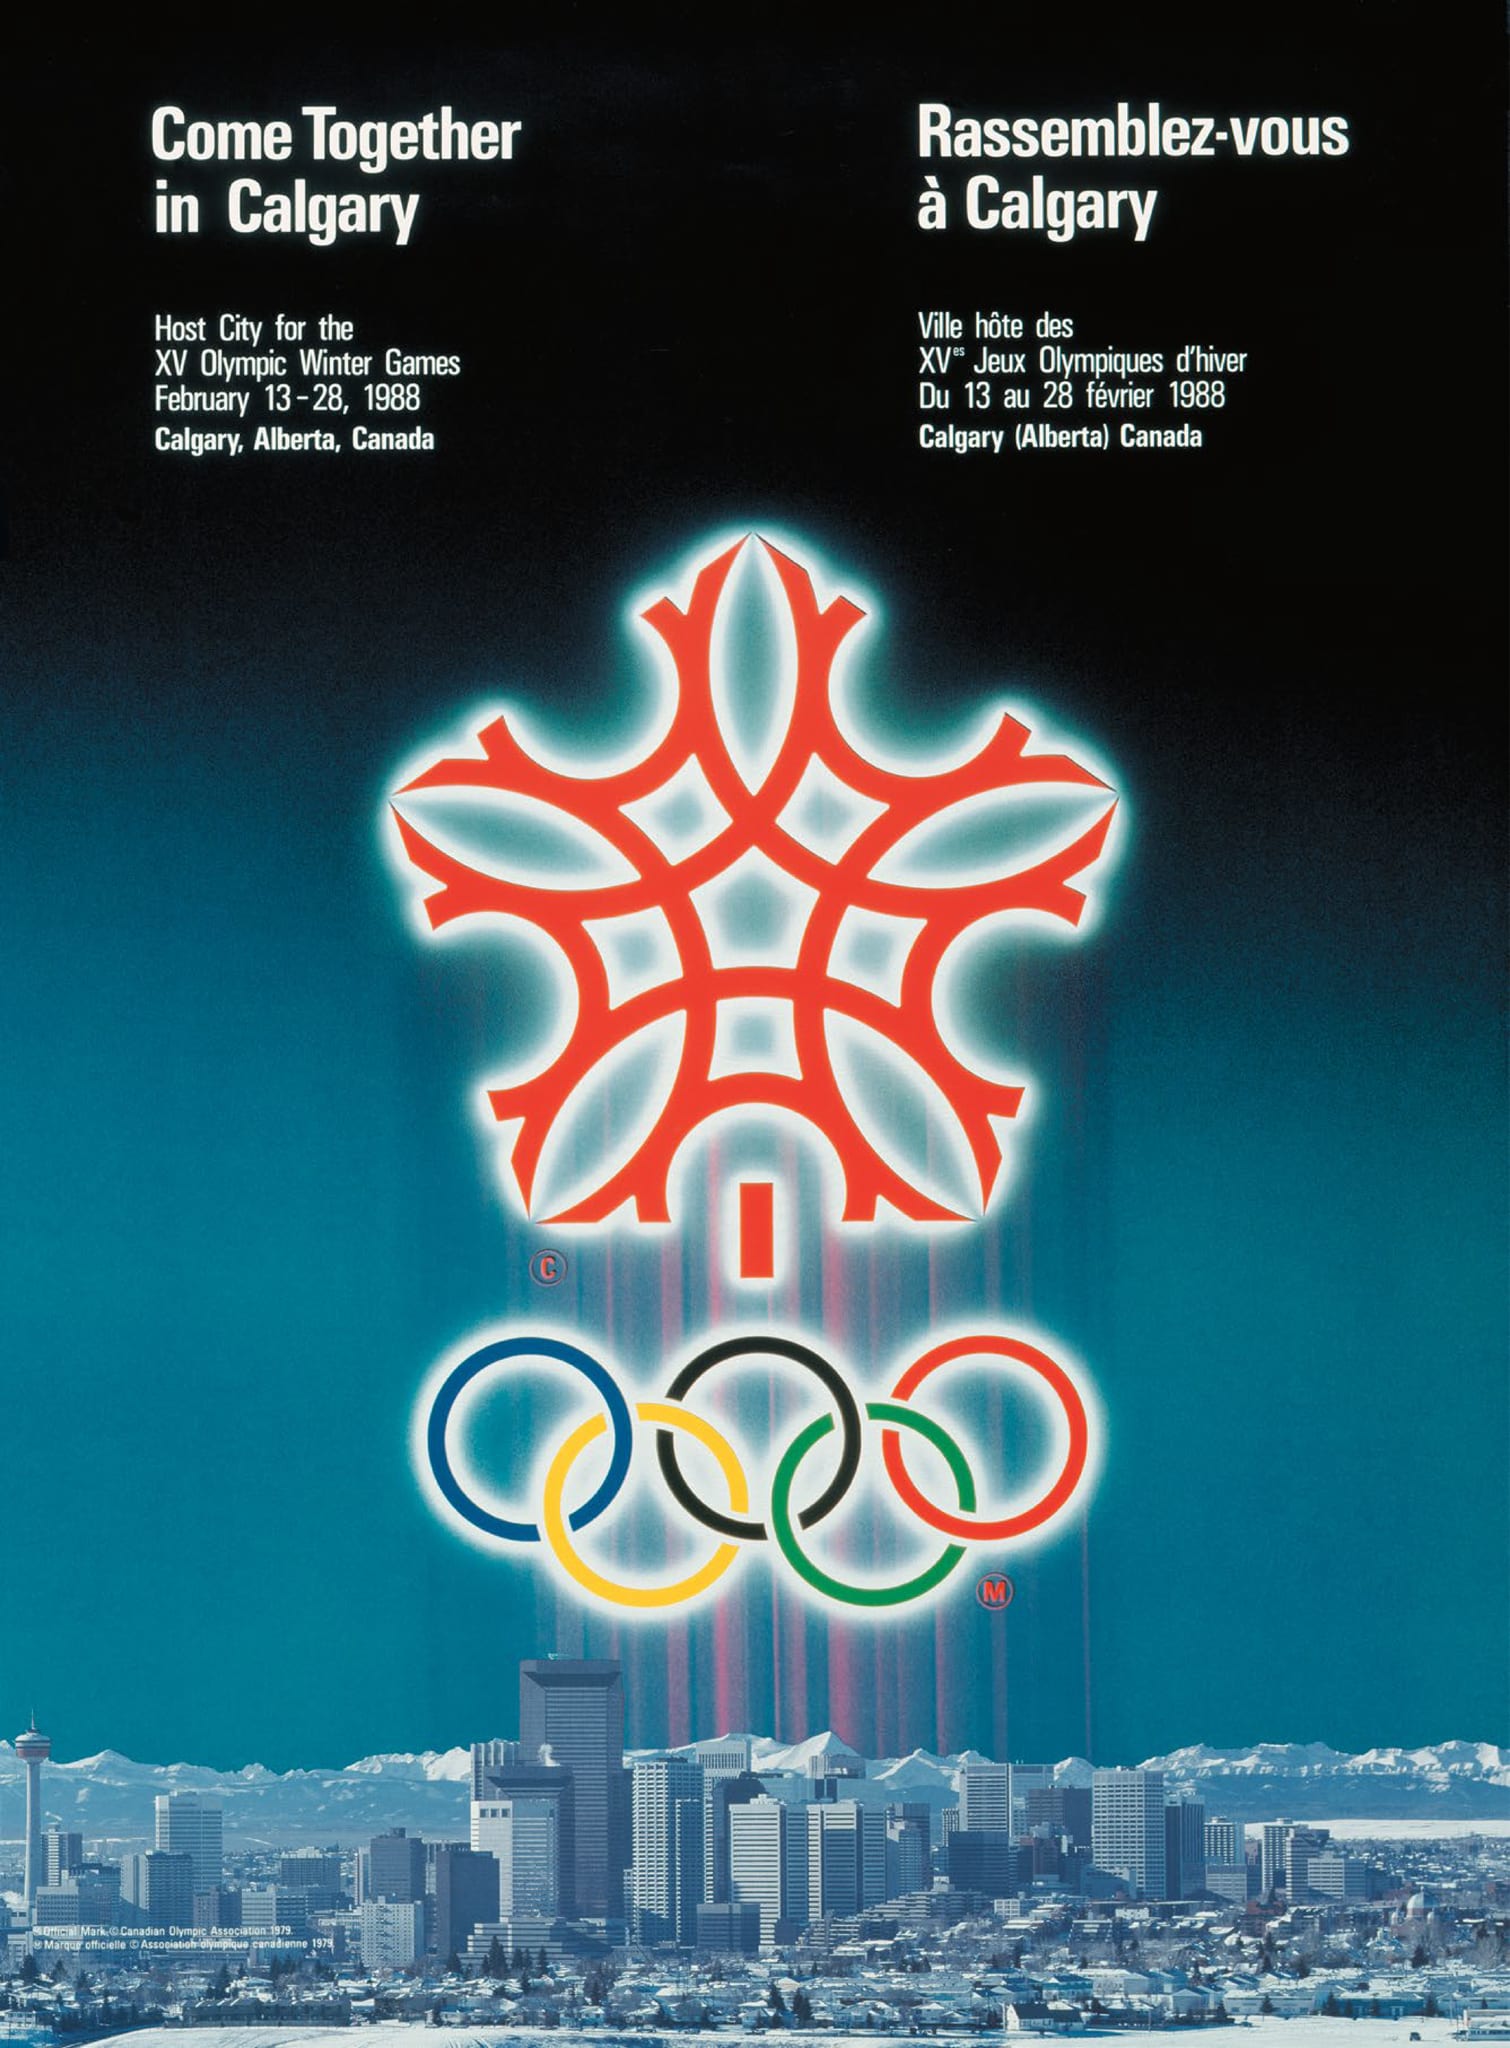 Logo olympique des Jeux de Calgary 1988, conception de l’affiche et aspect  des Jeux